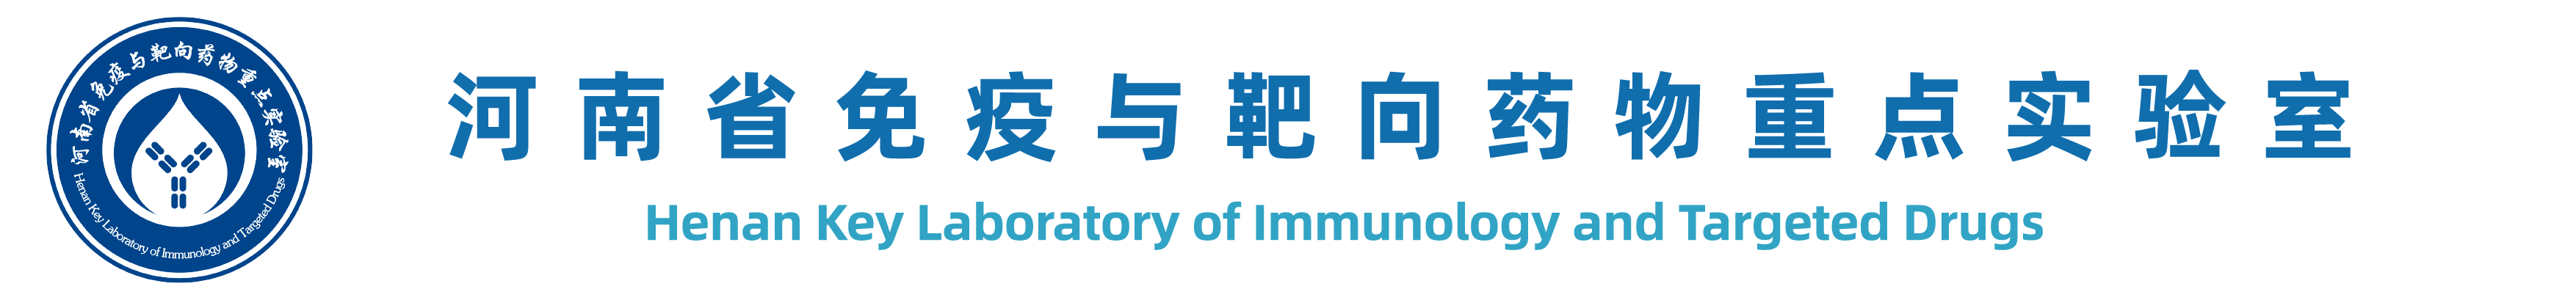 河南省免疫与靶向药物重点实验室